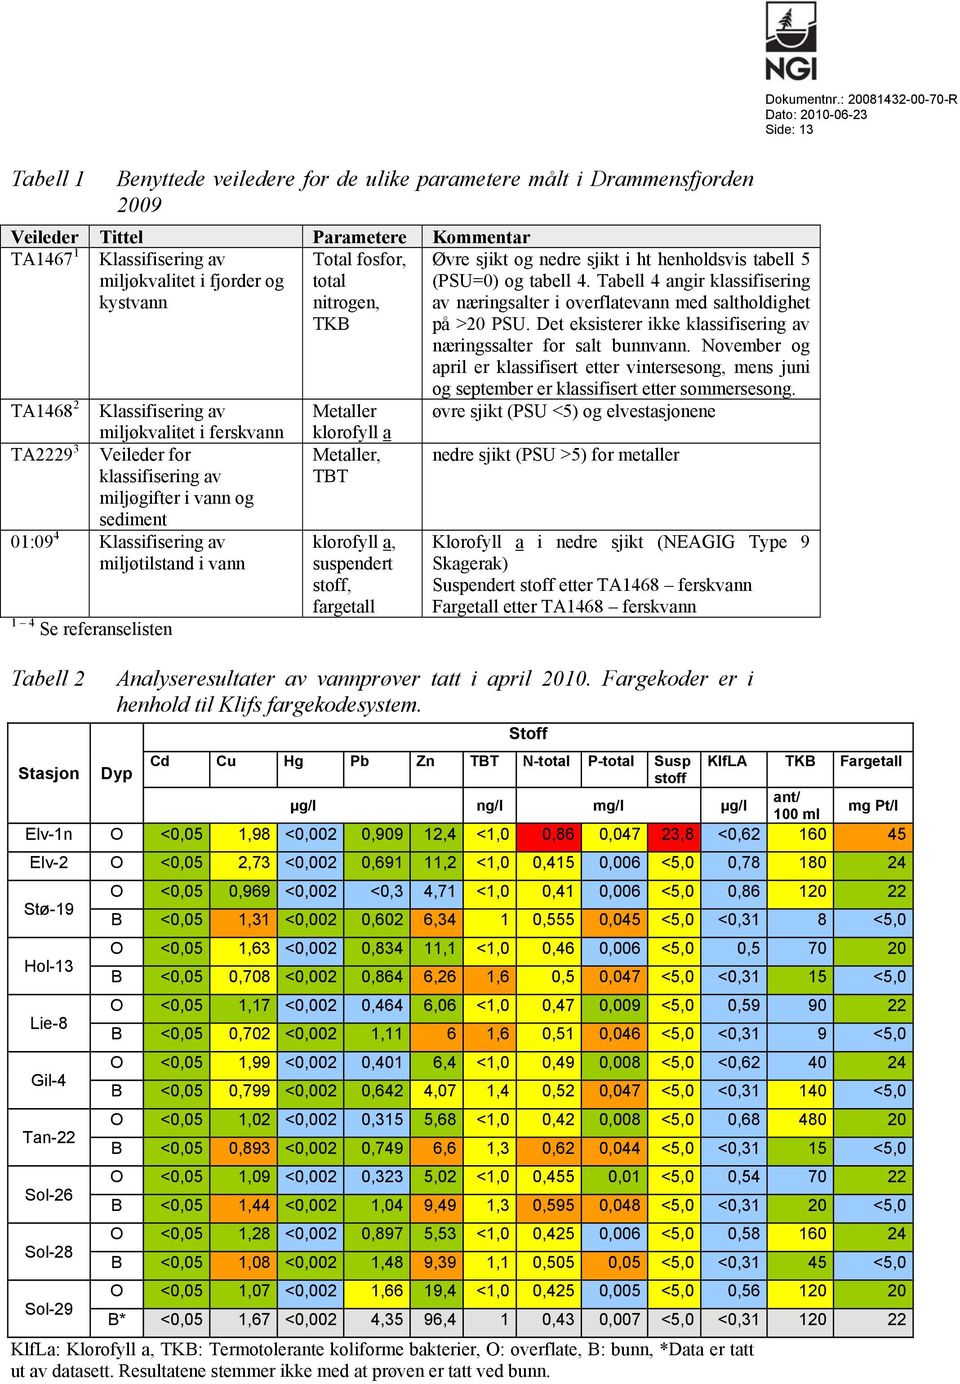 fosfor, total nitrogen, TKB Metaller klorofyll a Metaller, TBT klorofyll a, suspendert stoff, fargetall Øvre sjikt og nedre sjikt i ht henholdsvis tabell 5 (PSU=0) og tabell 4.